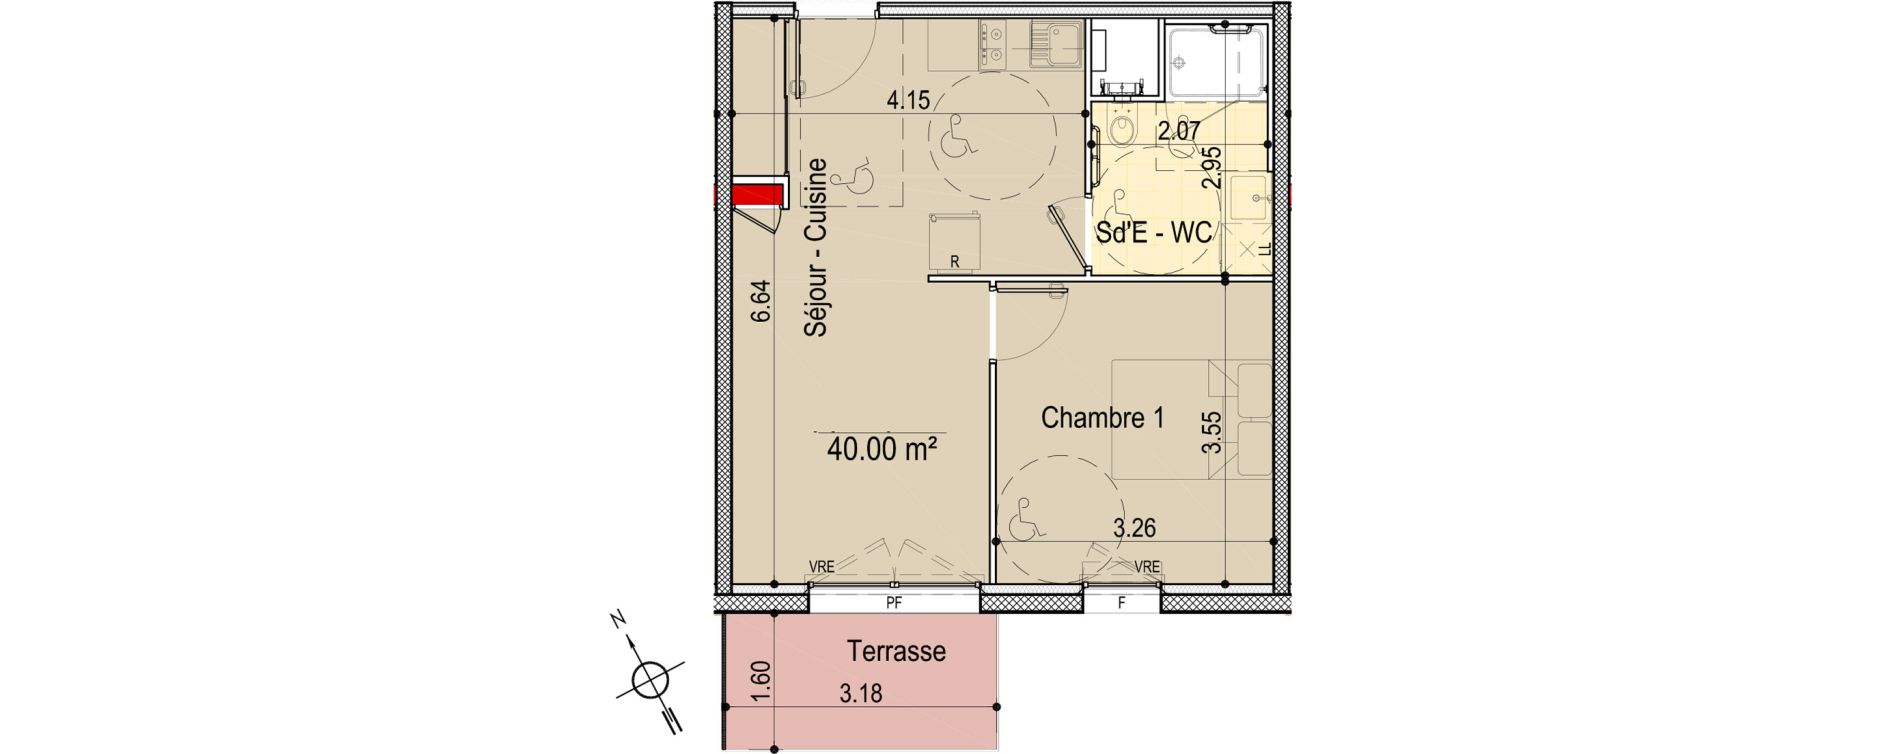 Appartement T2 de 40,00 m2 aux Sables-D'Olonne Le chateau d olonne